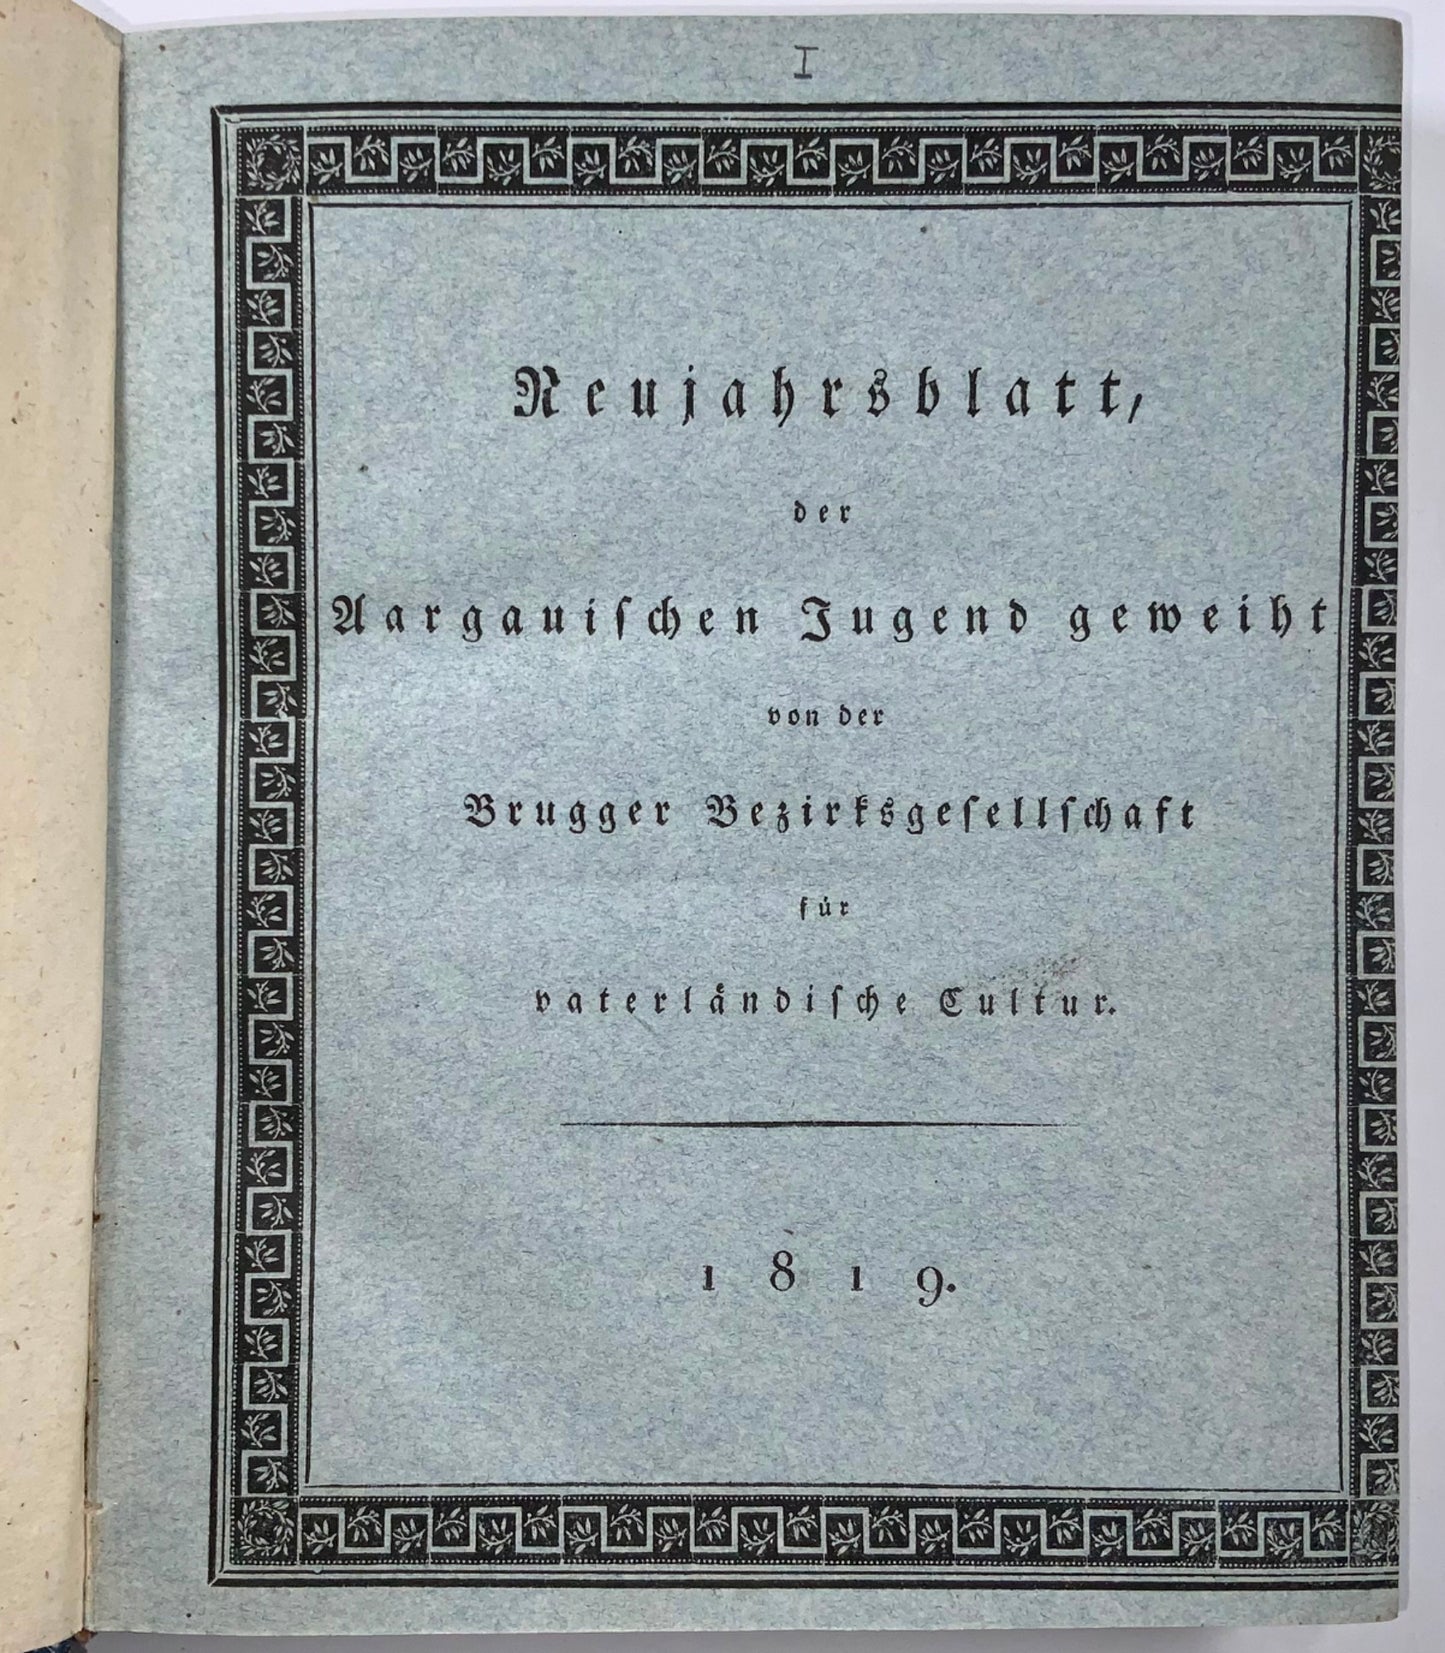 1819-29 Neujahrsblatt for Aargau, Switzerland, complete set, illustrated